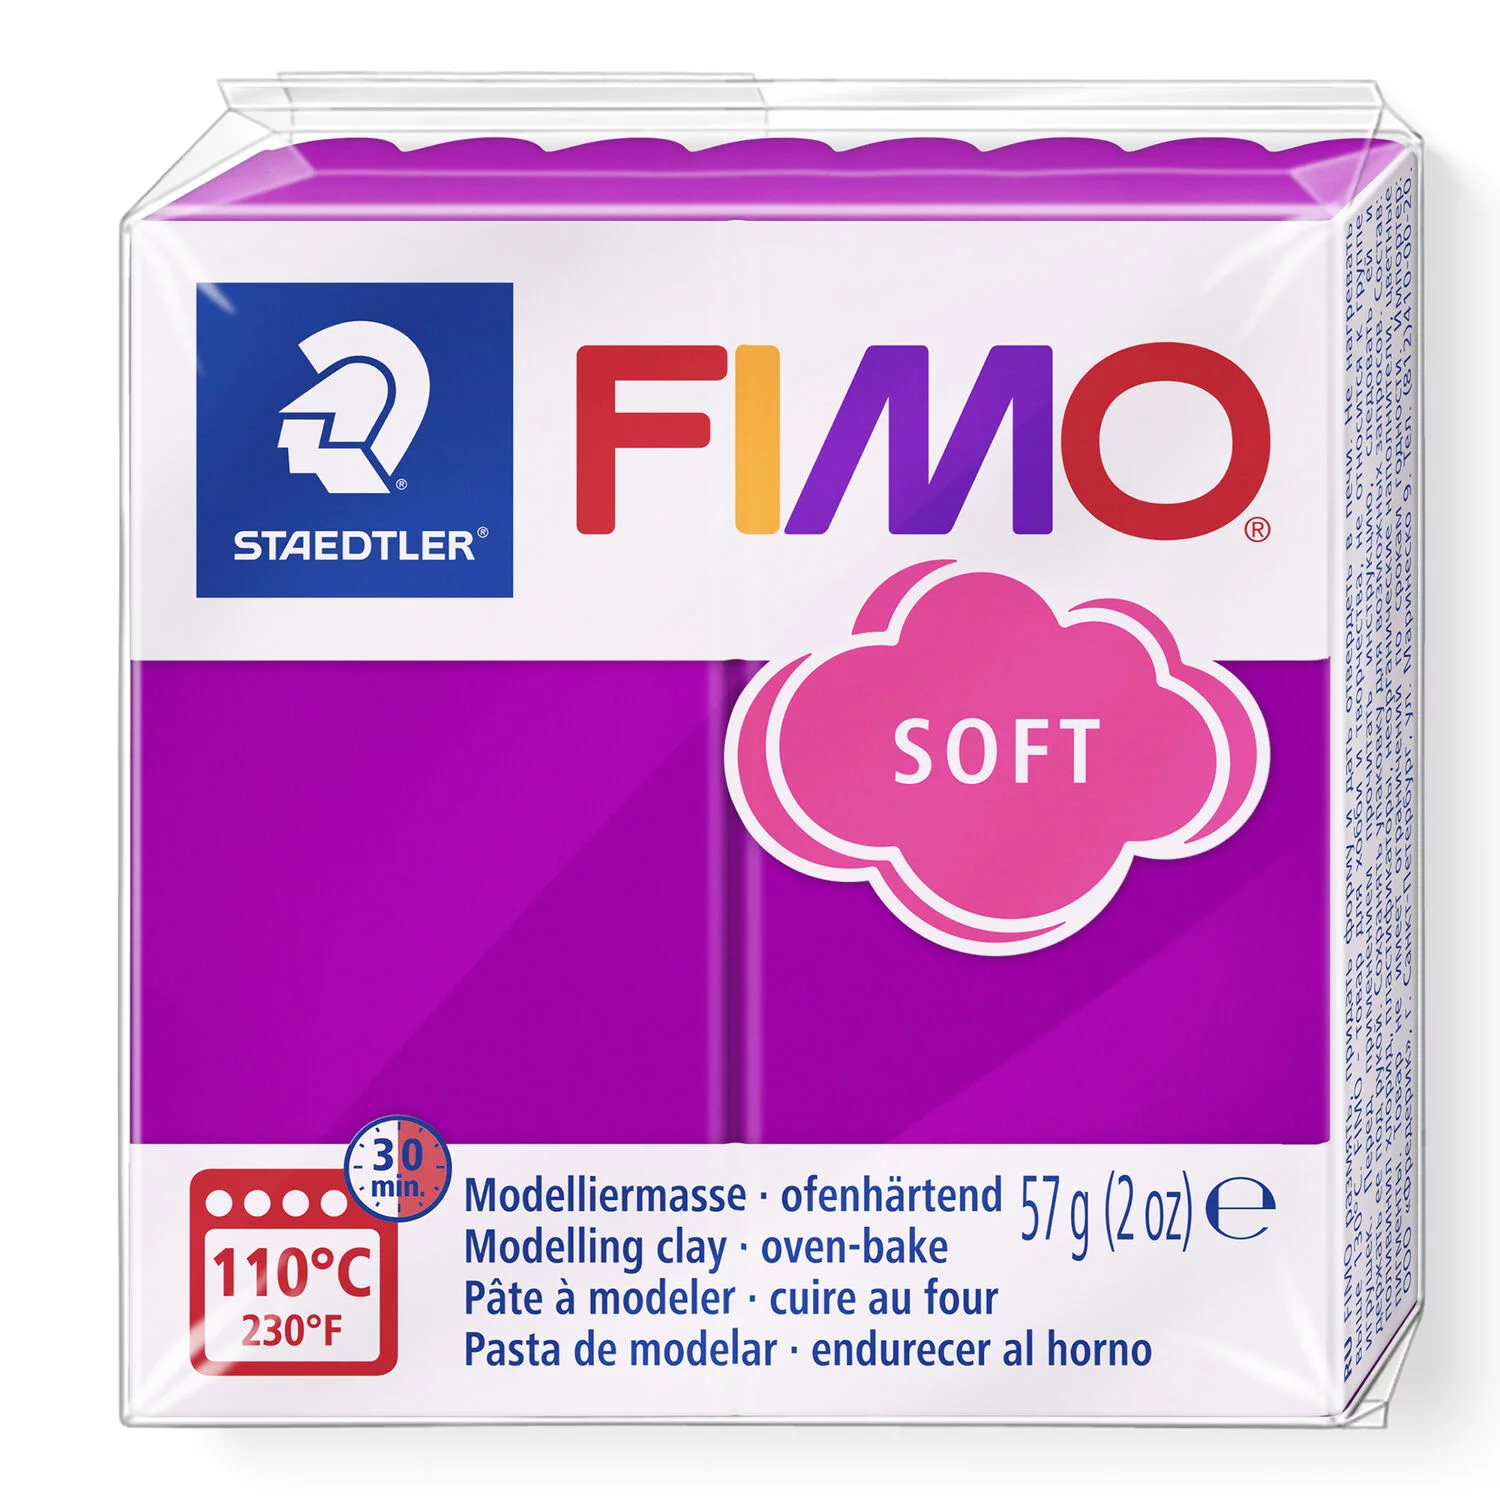 STAEDTLER 8020-61 - Fimo soft ofenhärtende Modelliermasse, 57g, purpurviolett